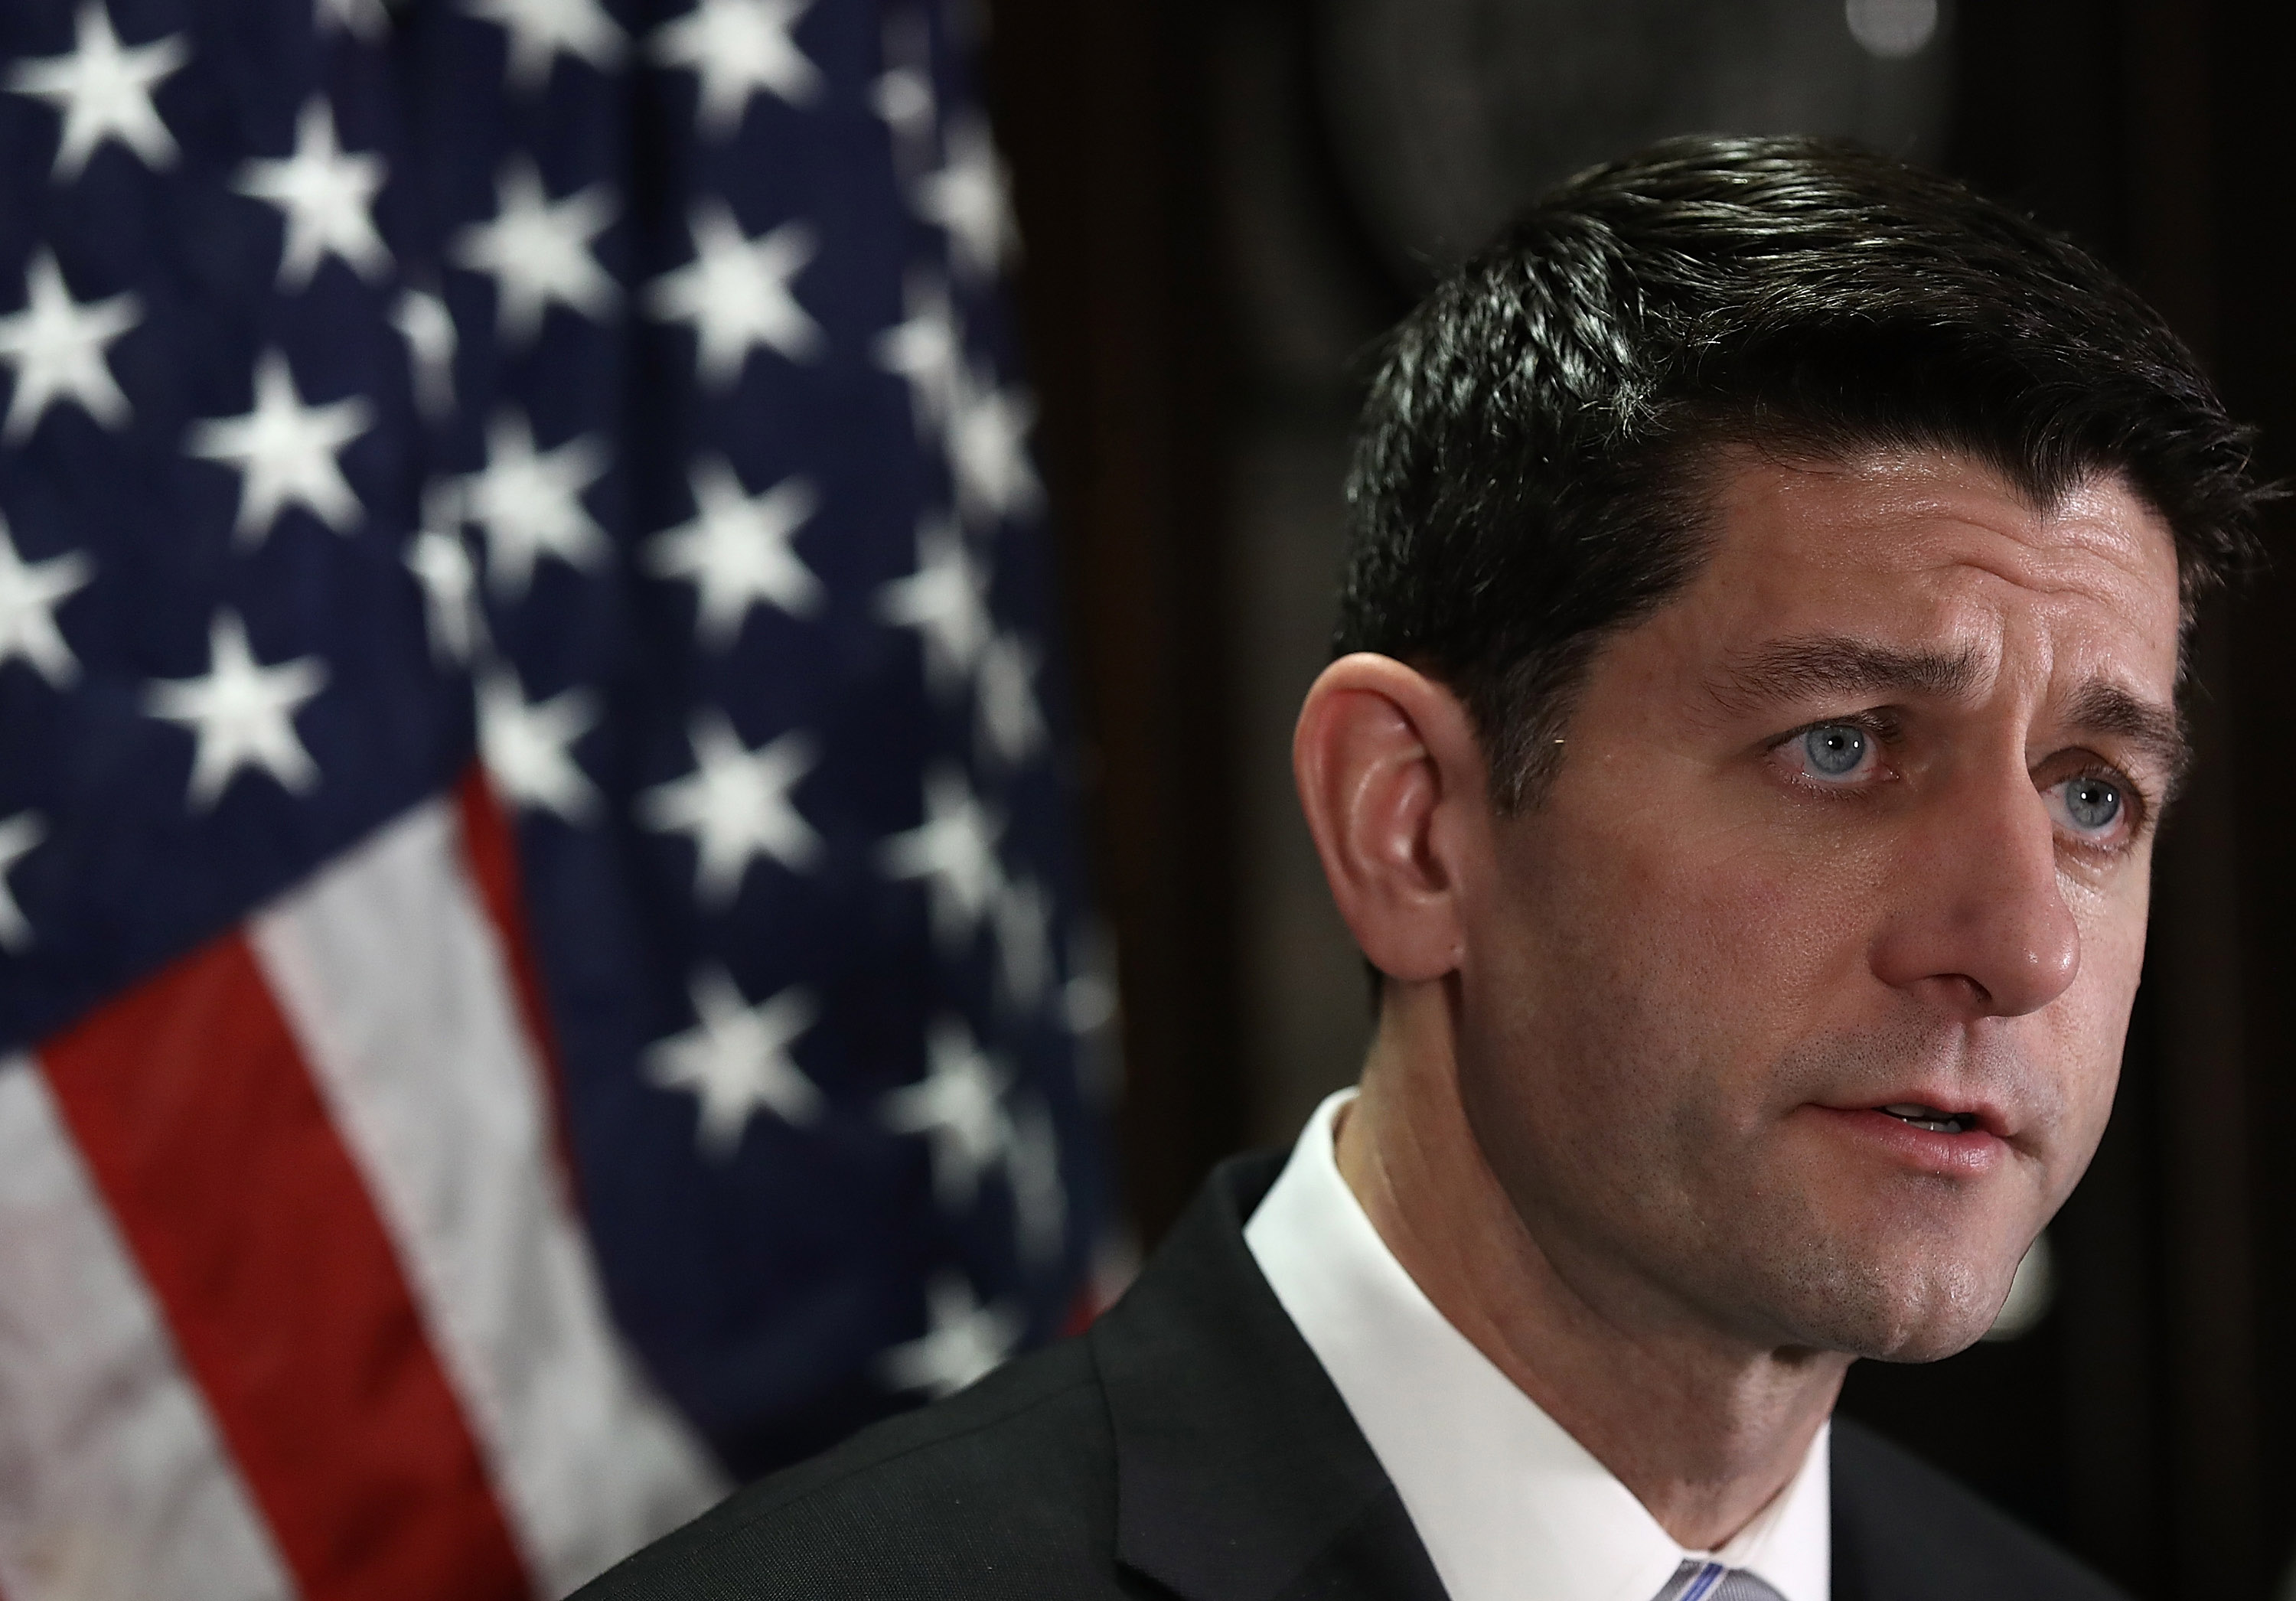 Speaker Paul Ryan meets with members of the House Republican leadership